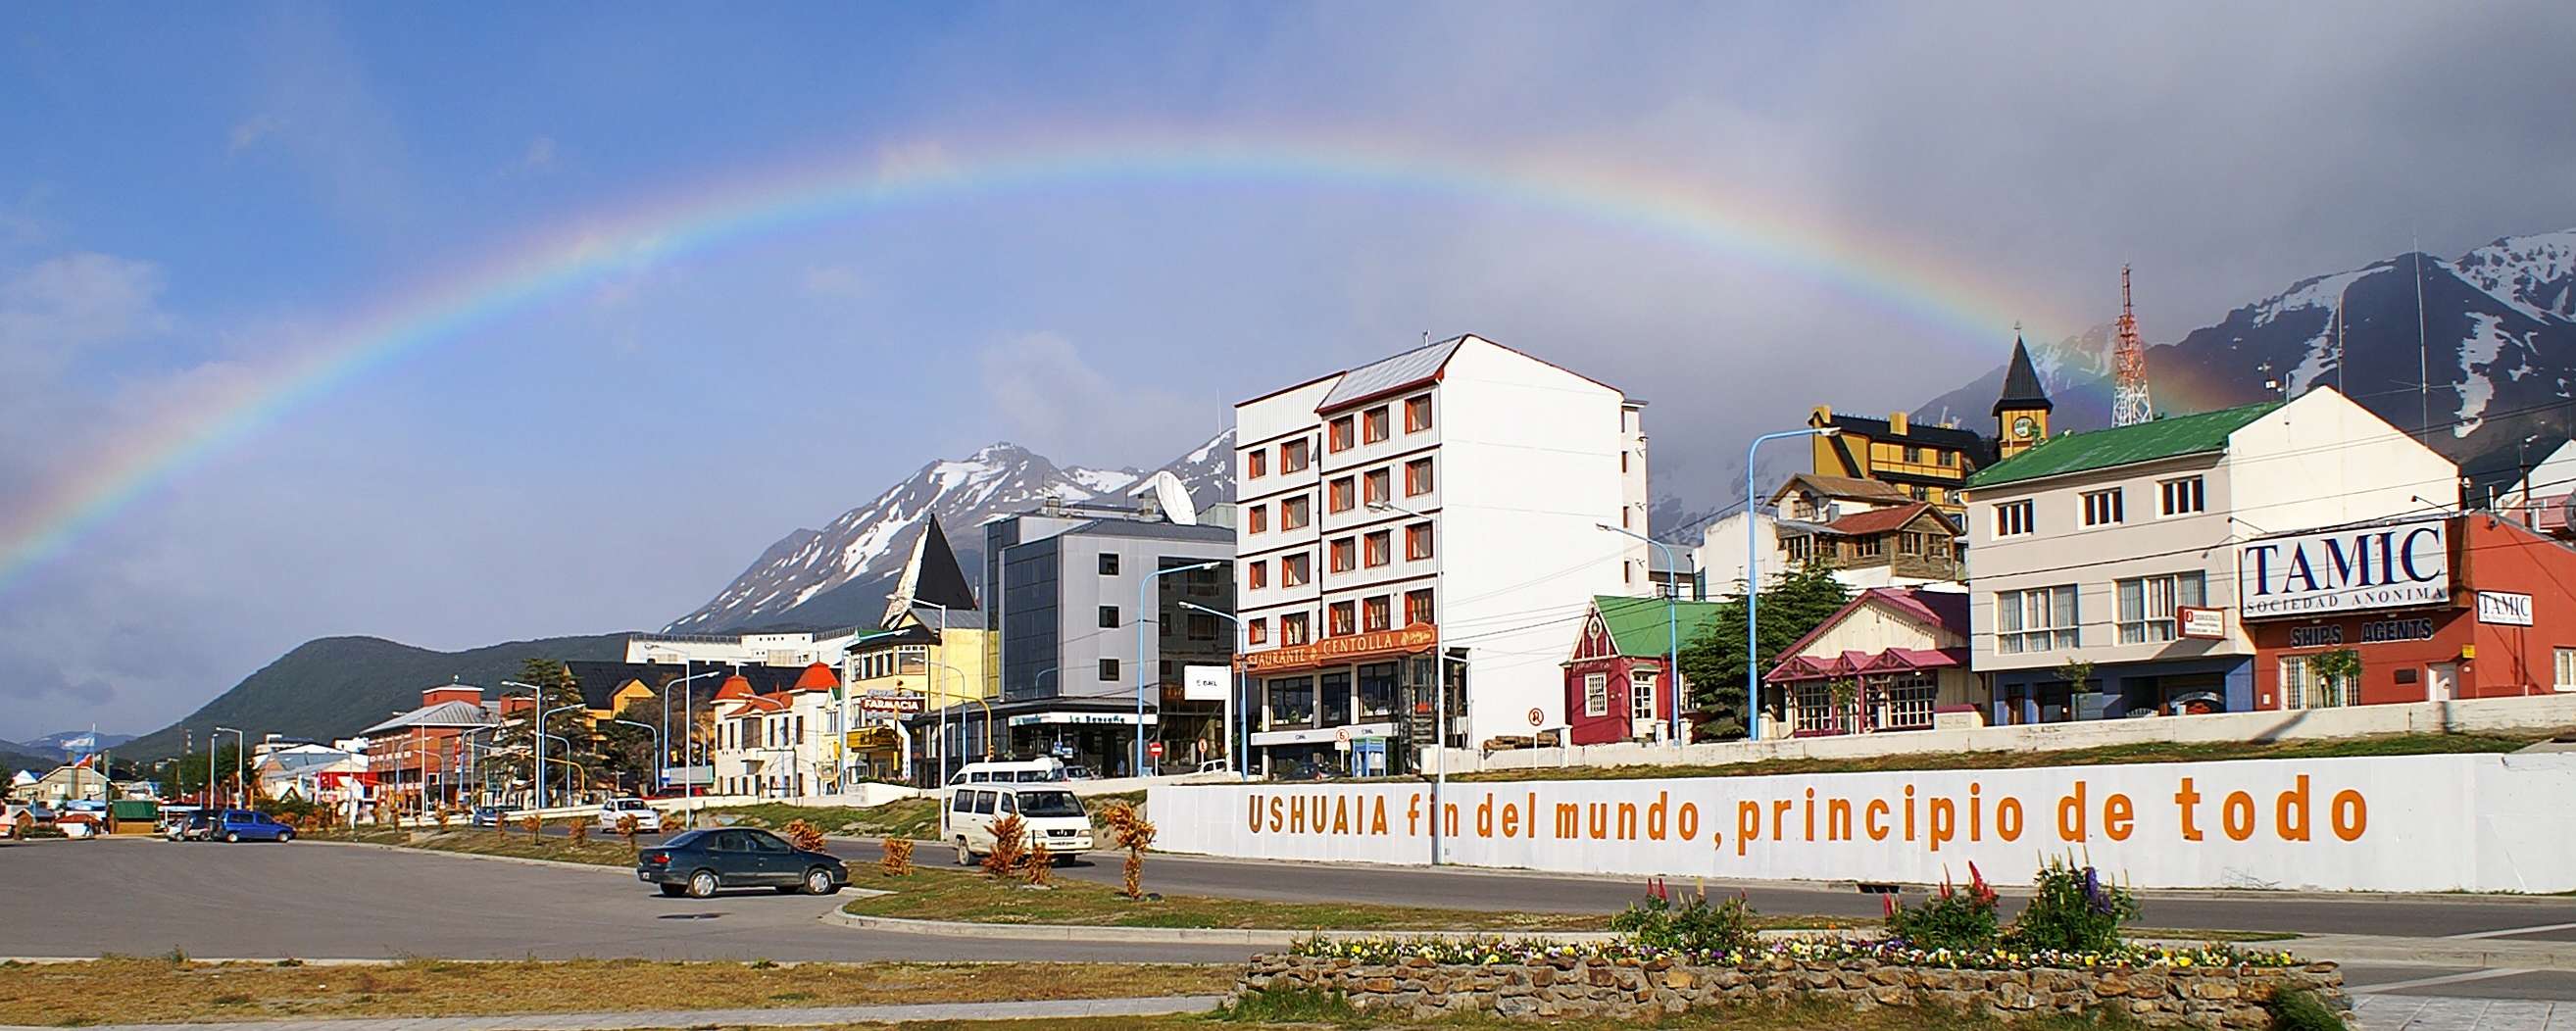 Ushuaia | Fin del mundo, principio de todo